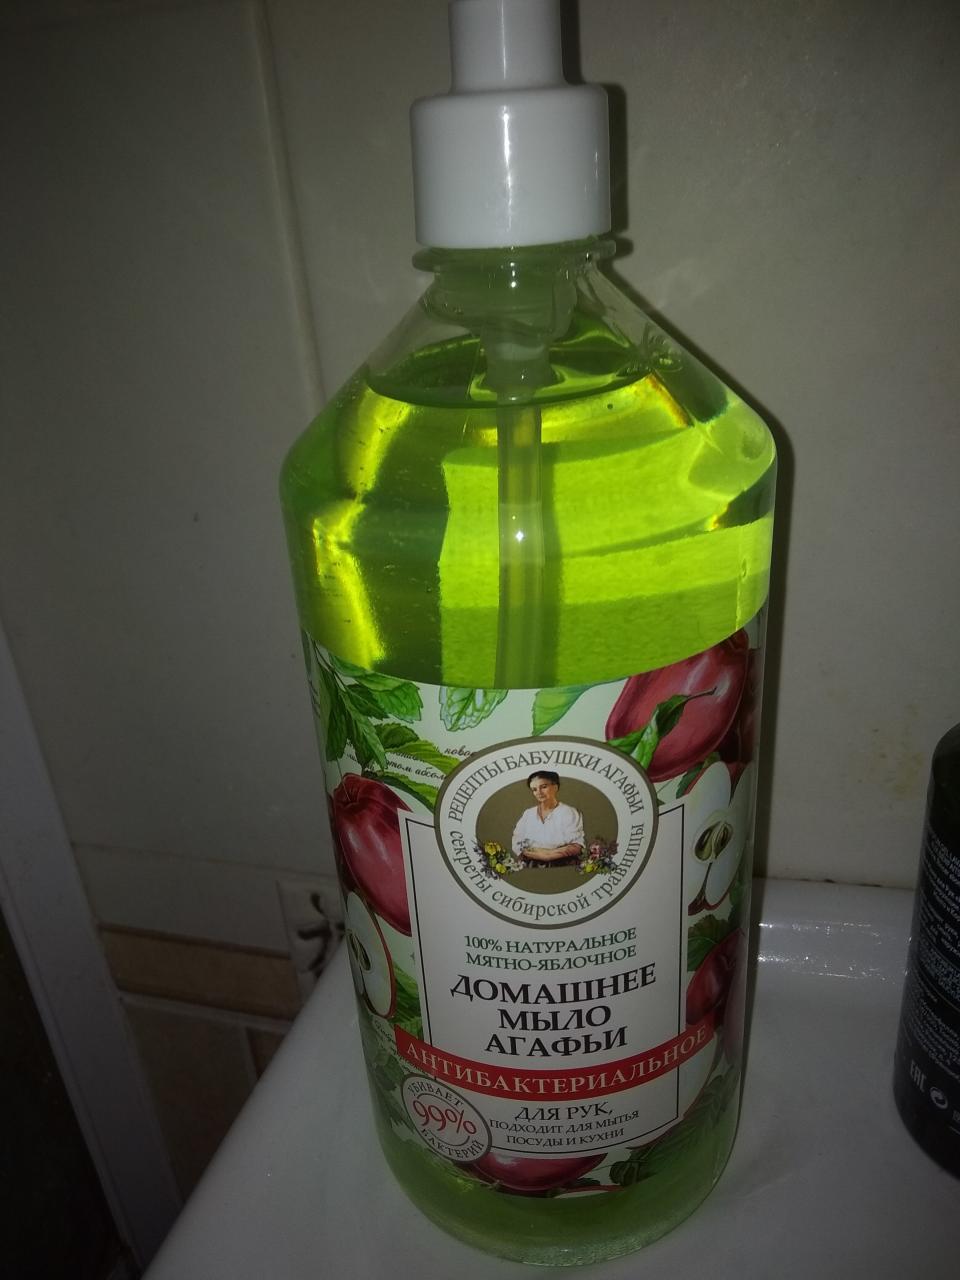 Отзыв на товар: Антибактериальное мыло Агафьи "Мятно-яблочное". Рецепты бабушки Агафьи.